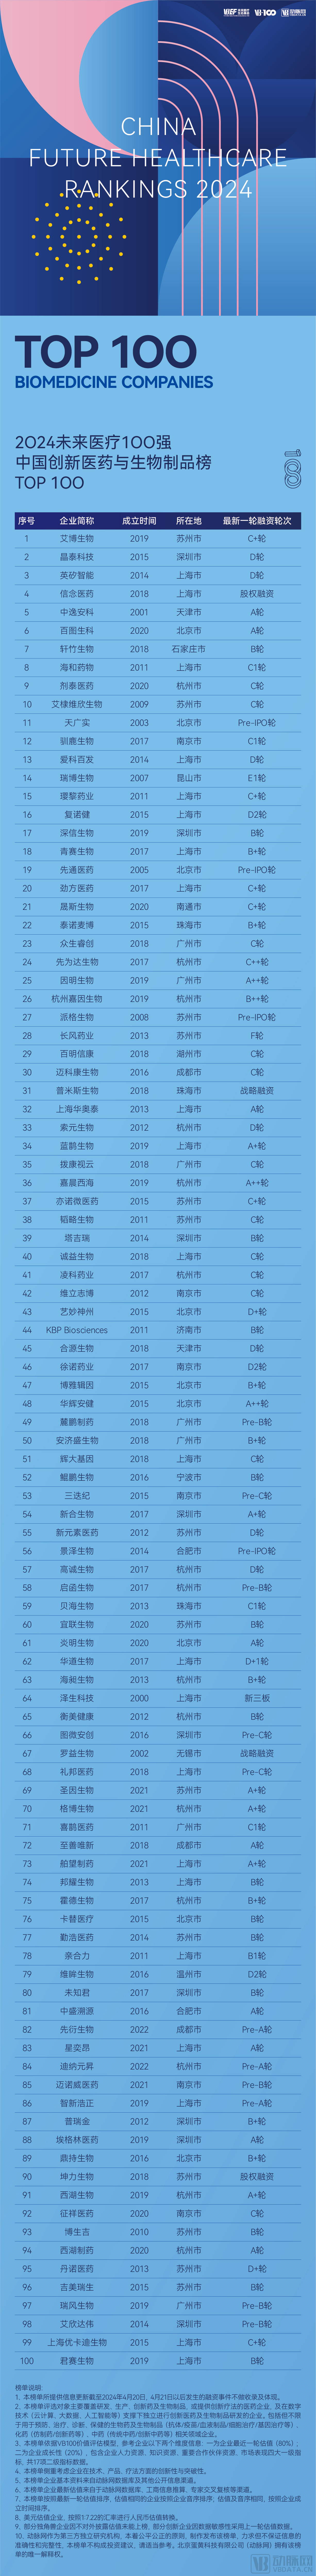 02-中国创新医药与生物制品榜.jpg